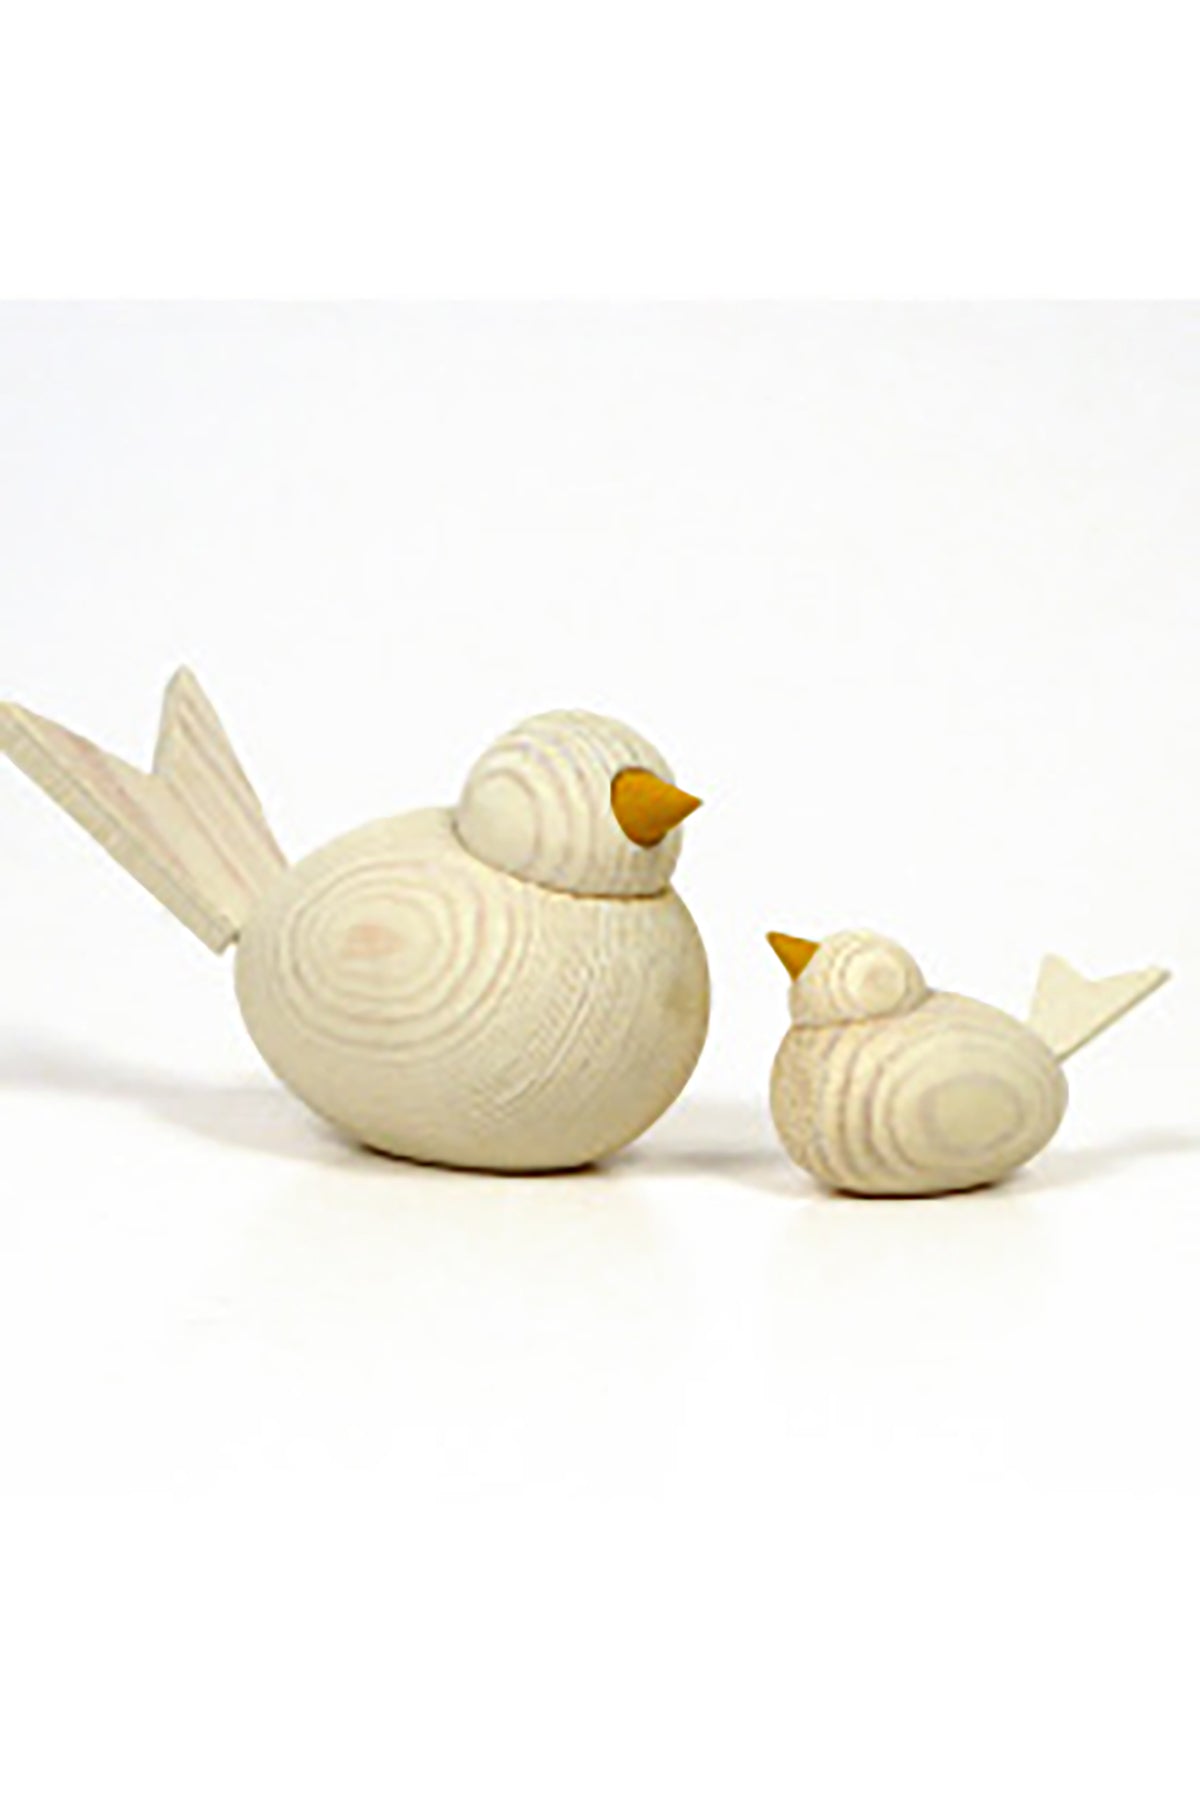 Decorative wooden bird | white